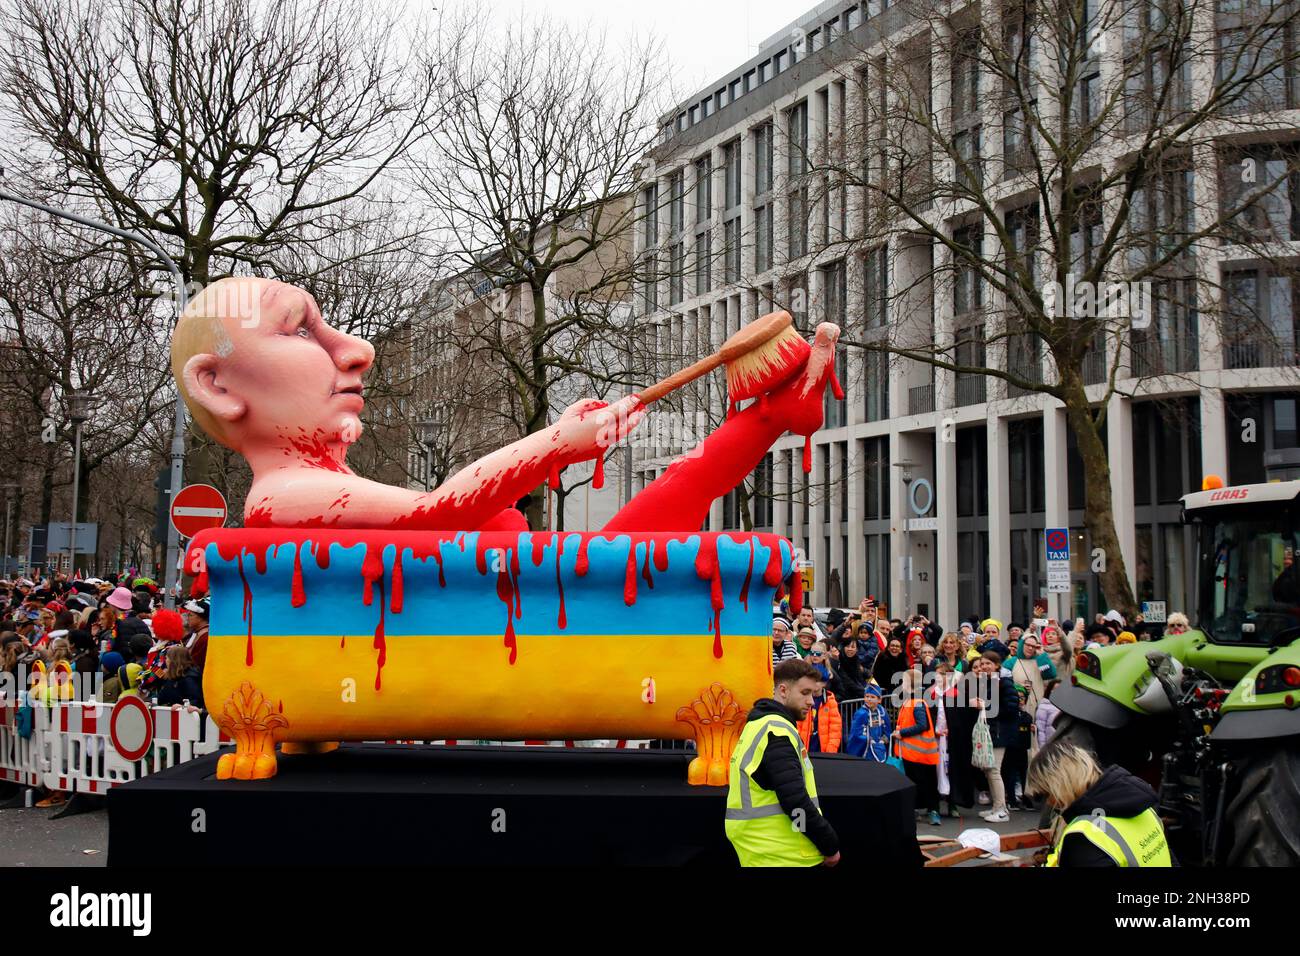 Le lundi de Shrove procession à Düsseldorf, flotte de carnaval à thème par le designer Jacques Tilly : Poutine baigne dans une baignoire pleine de sang Banque D'Images